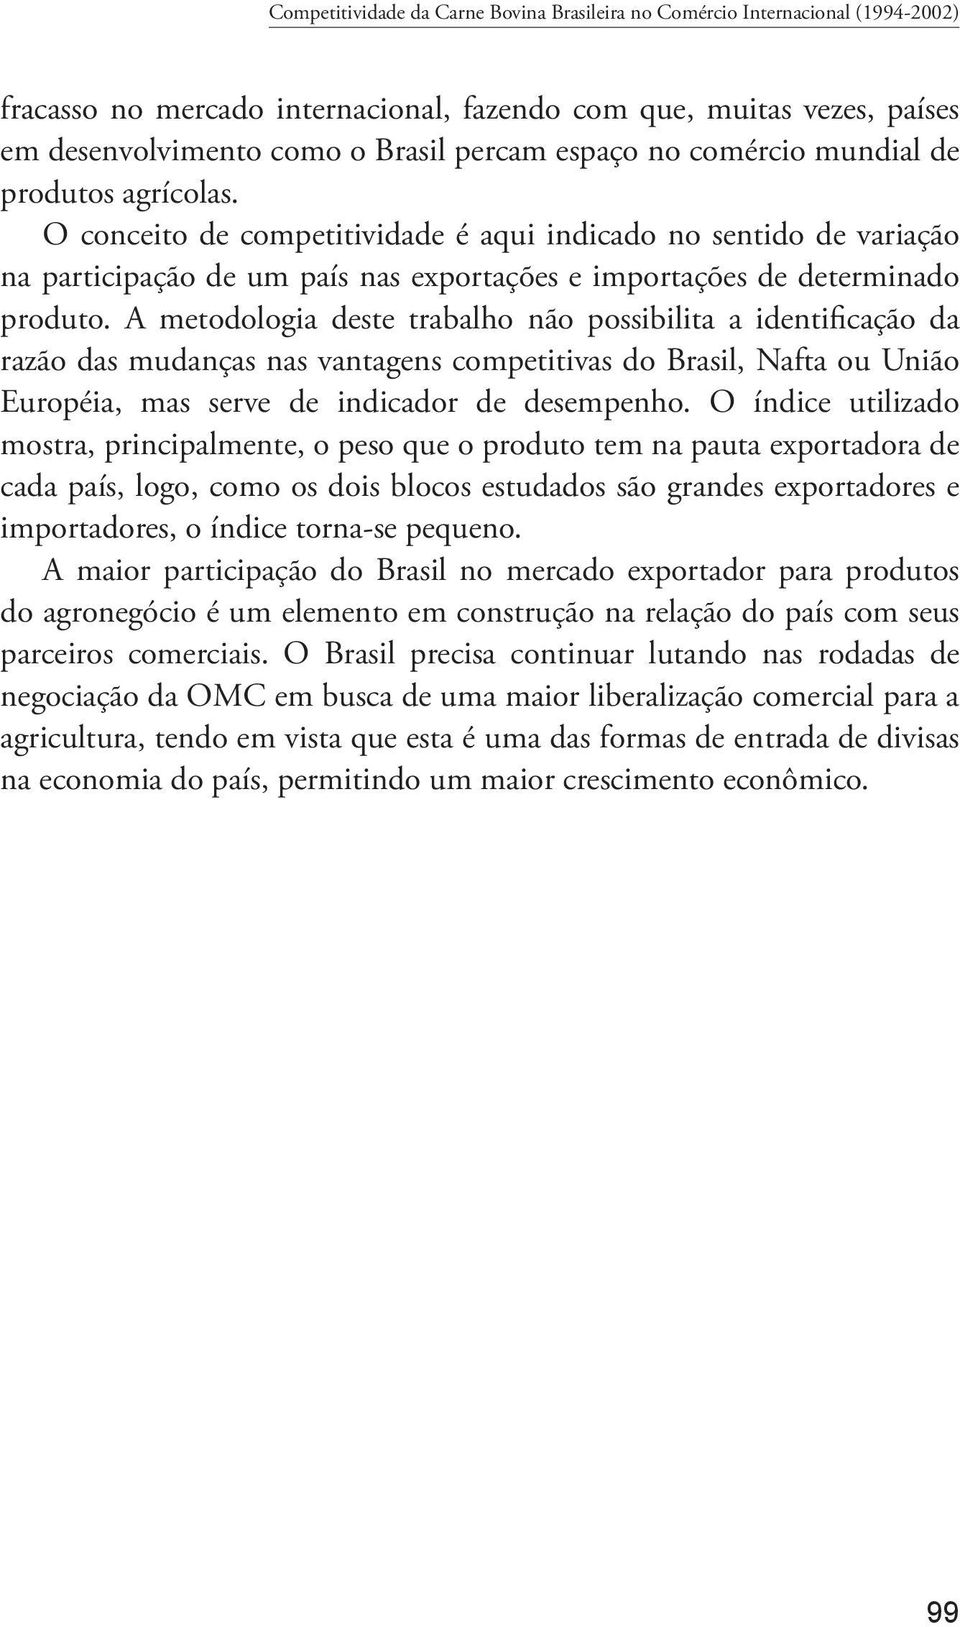 A metodologia deste trabalho não possibilita a identificação da razão das mudanças nas vantagens competitivas do Brasil, Nafta ou União Européia, mas serve de indicador de desempenho.